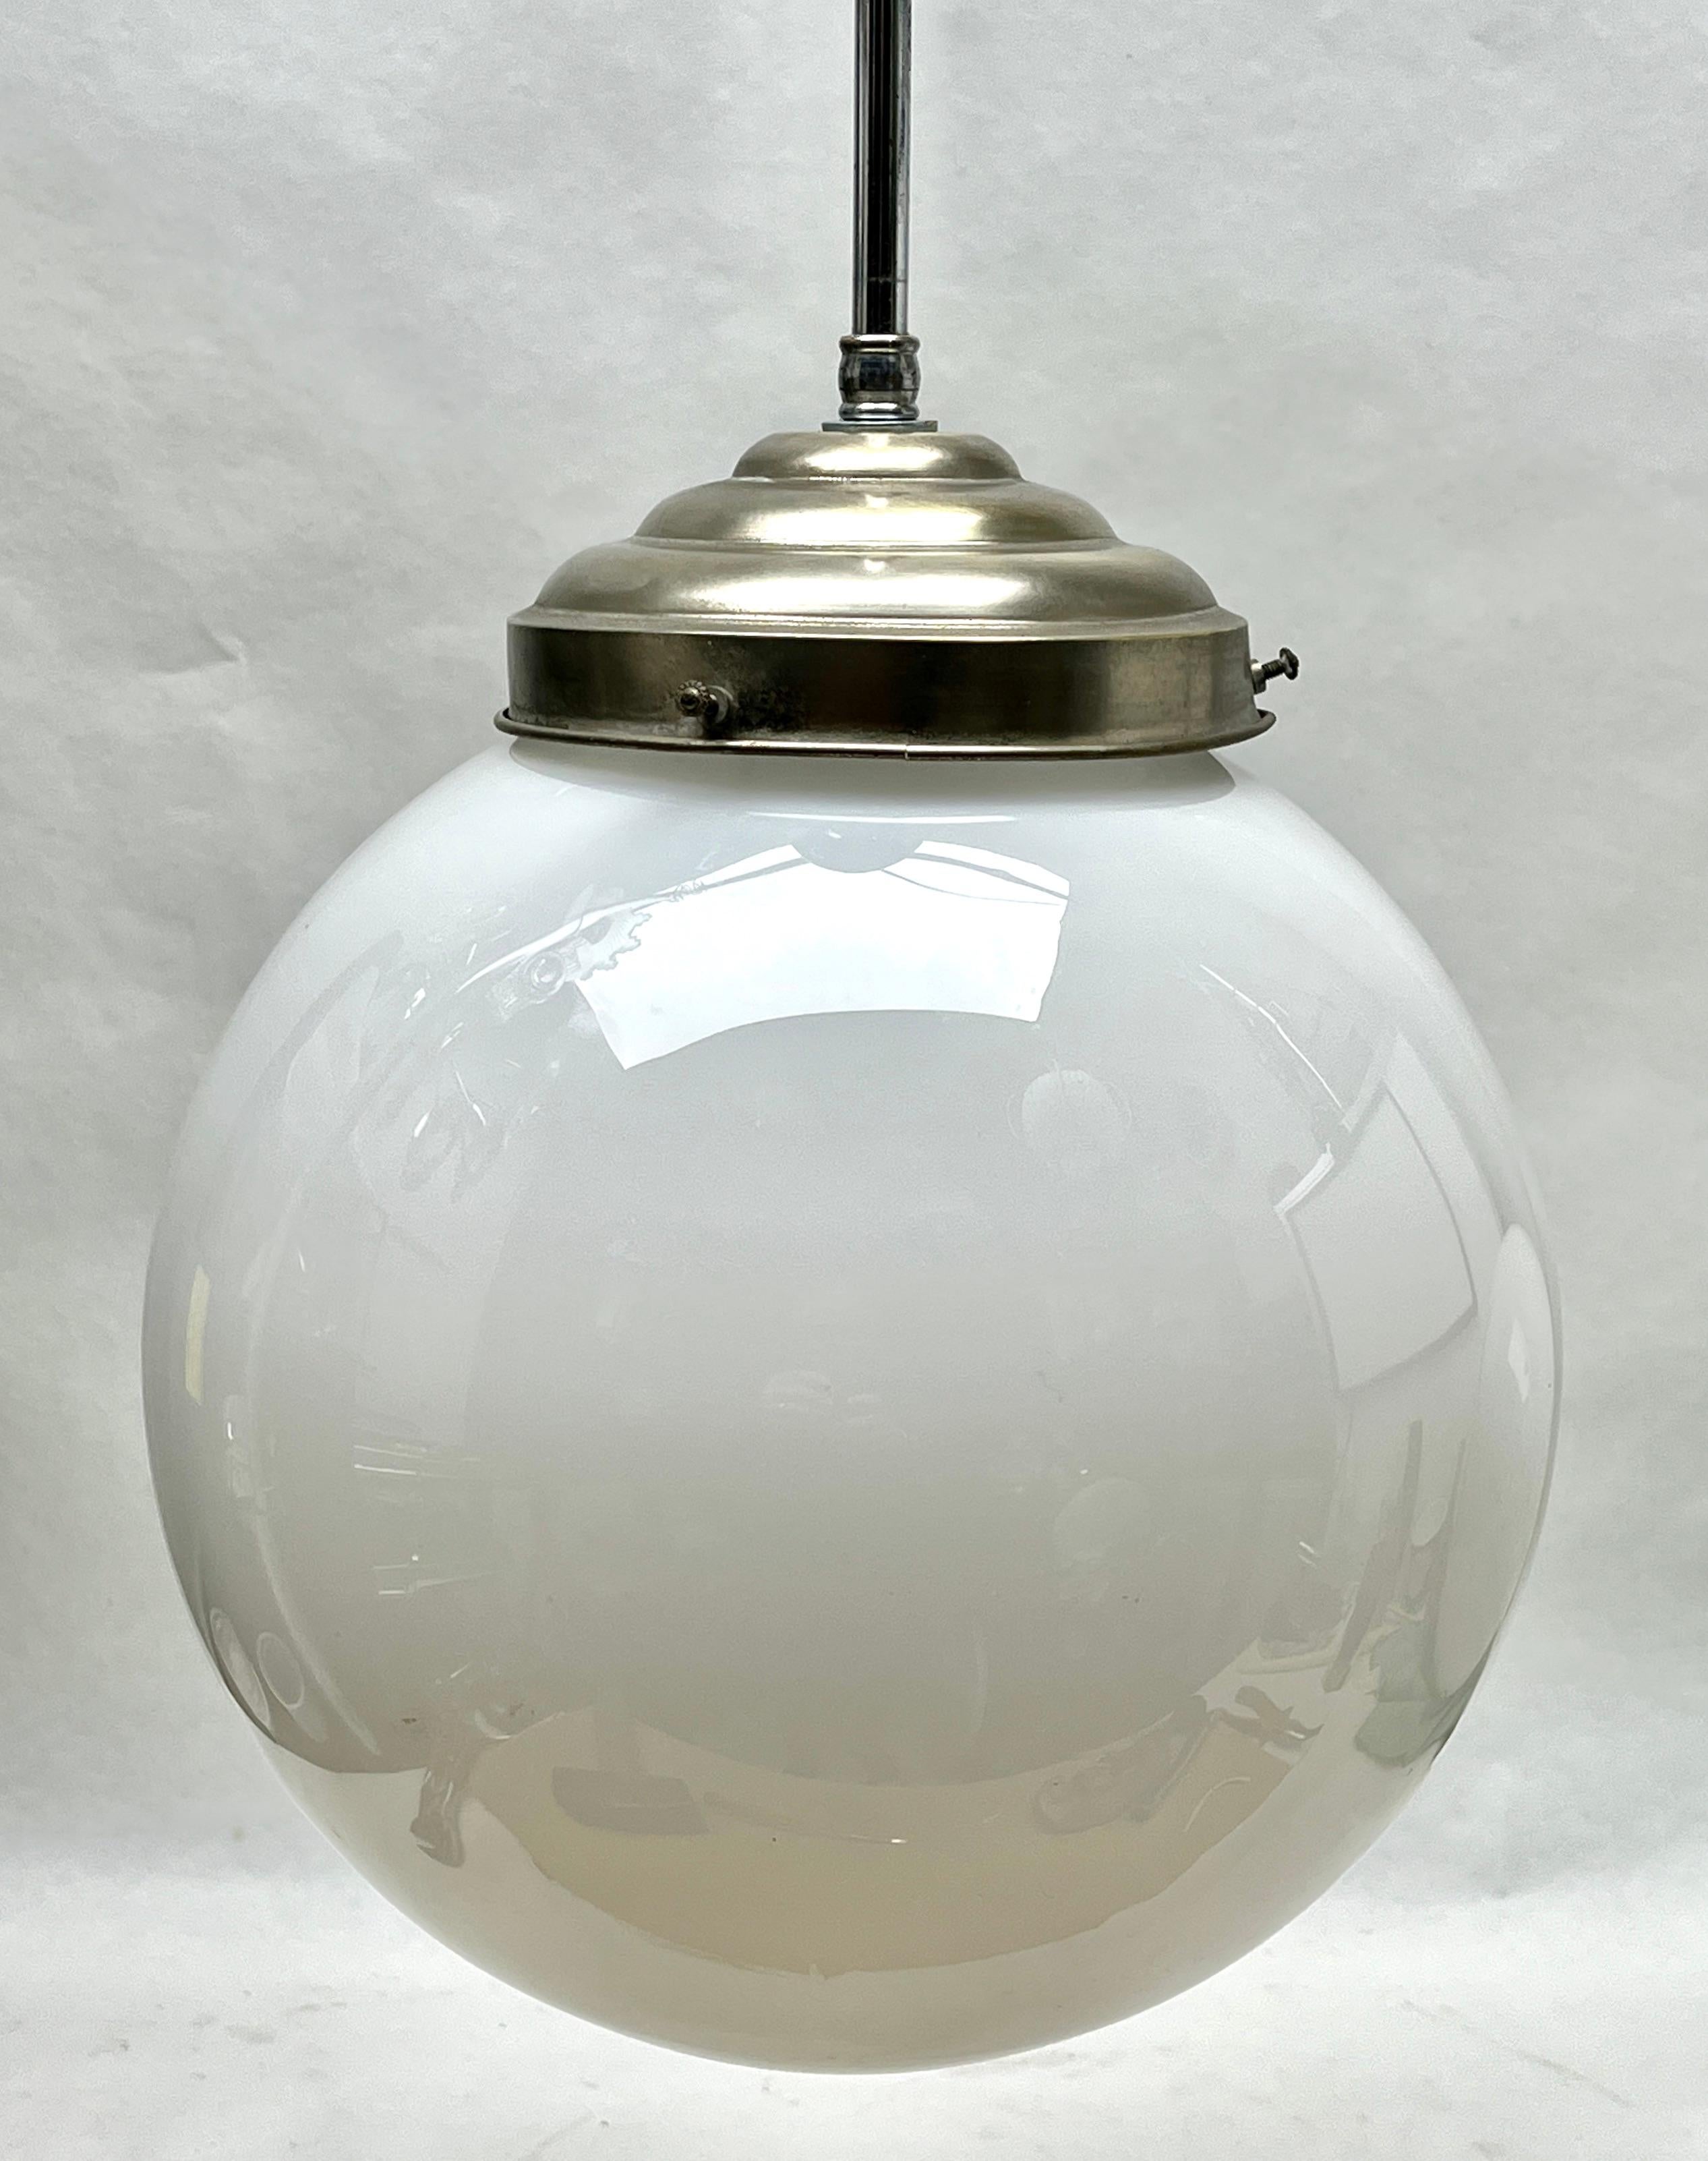 Aus der Reihe der Phillips Company stammt diese zentrale Leuchte auf einem verchromten Stiel. 
Die Lampe hat eine Halterung auf einer verchromten Platte und hält einen runden kugelförmigen Schirm aus Opalglas.

In gutem Zustand und voll